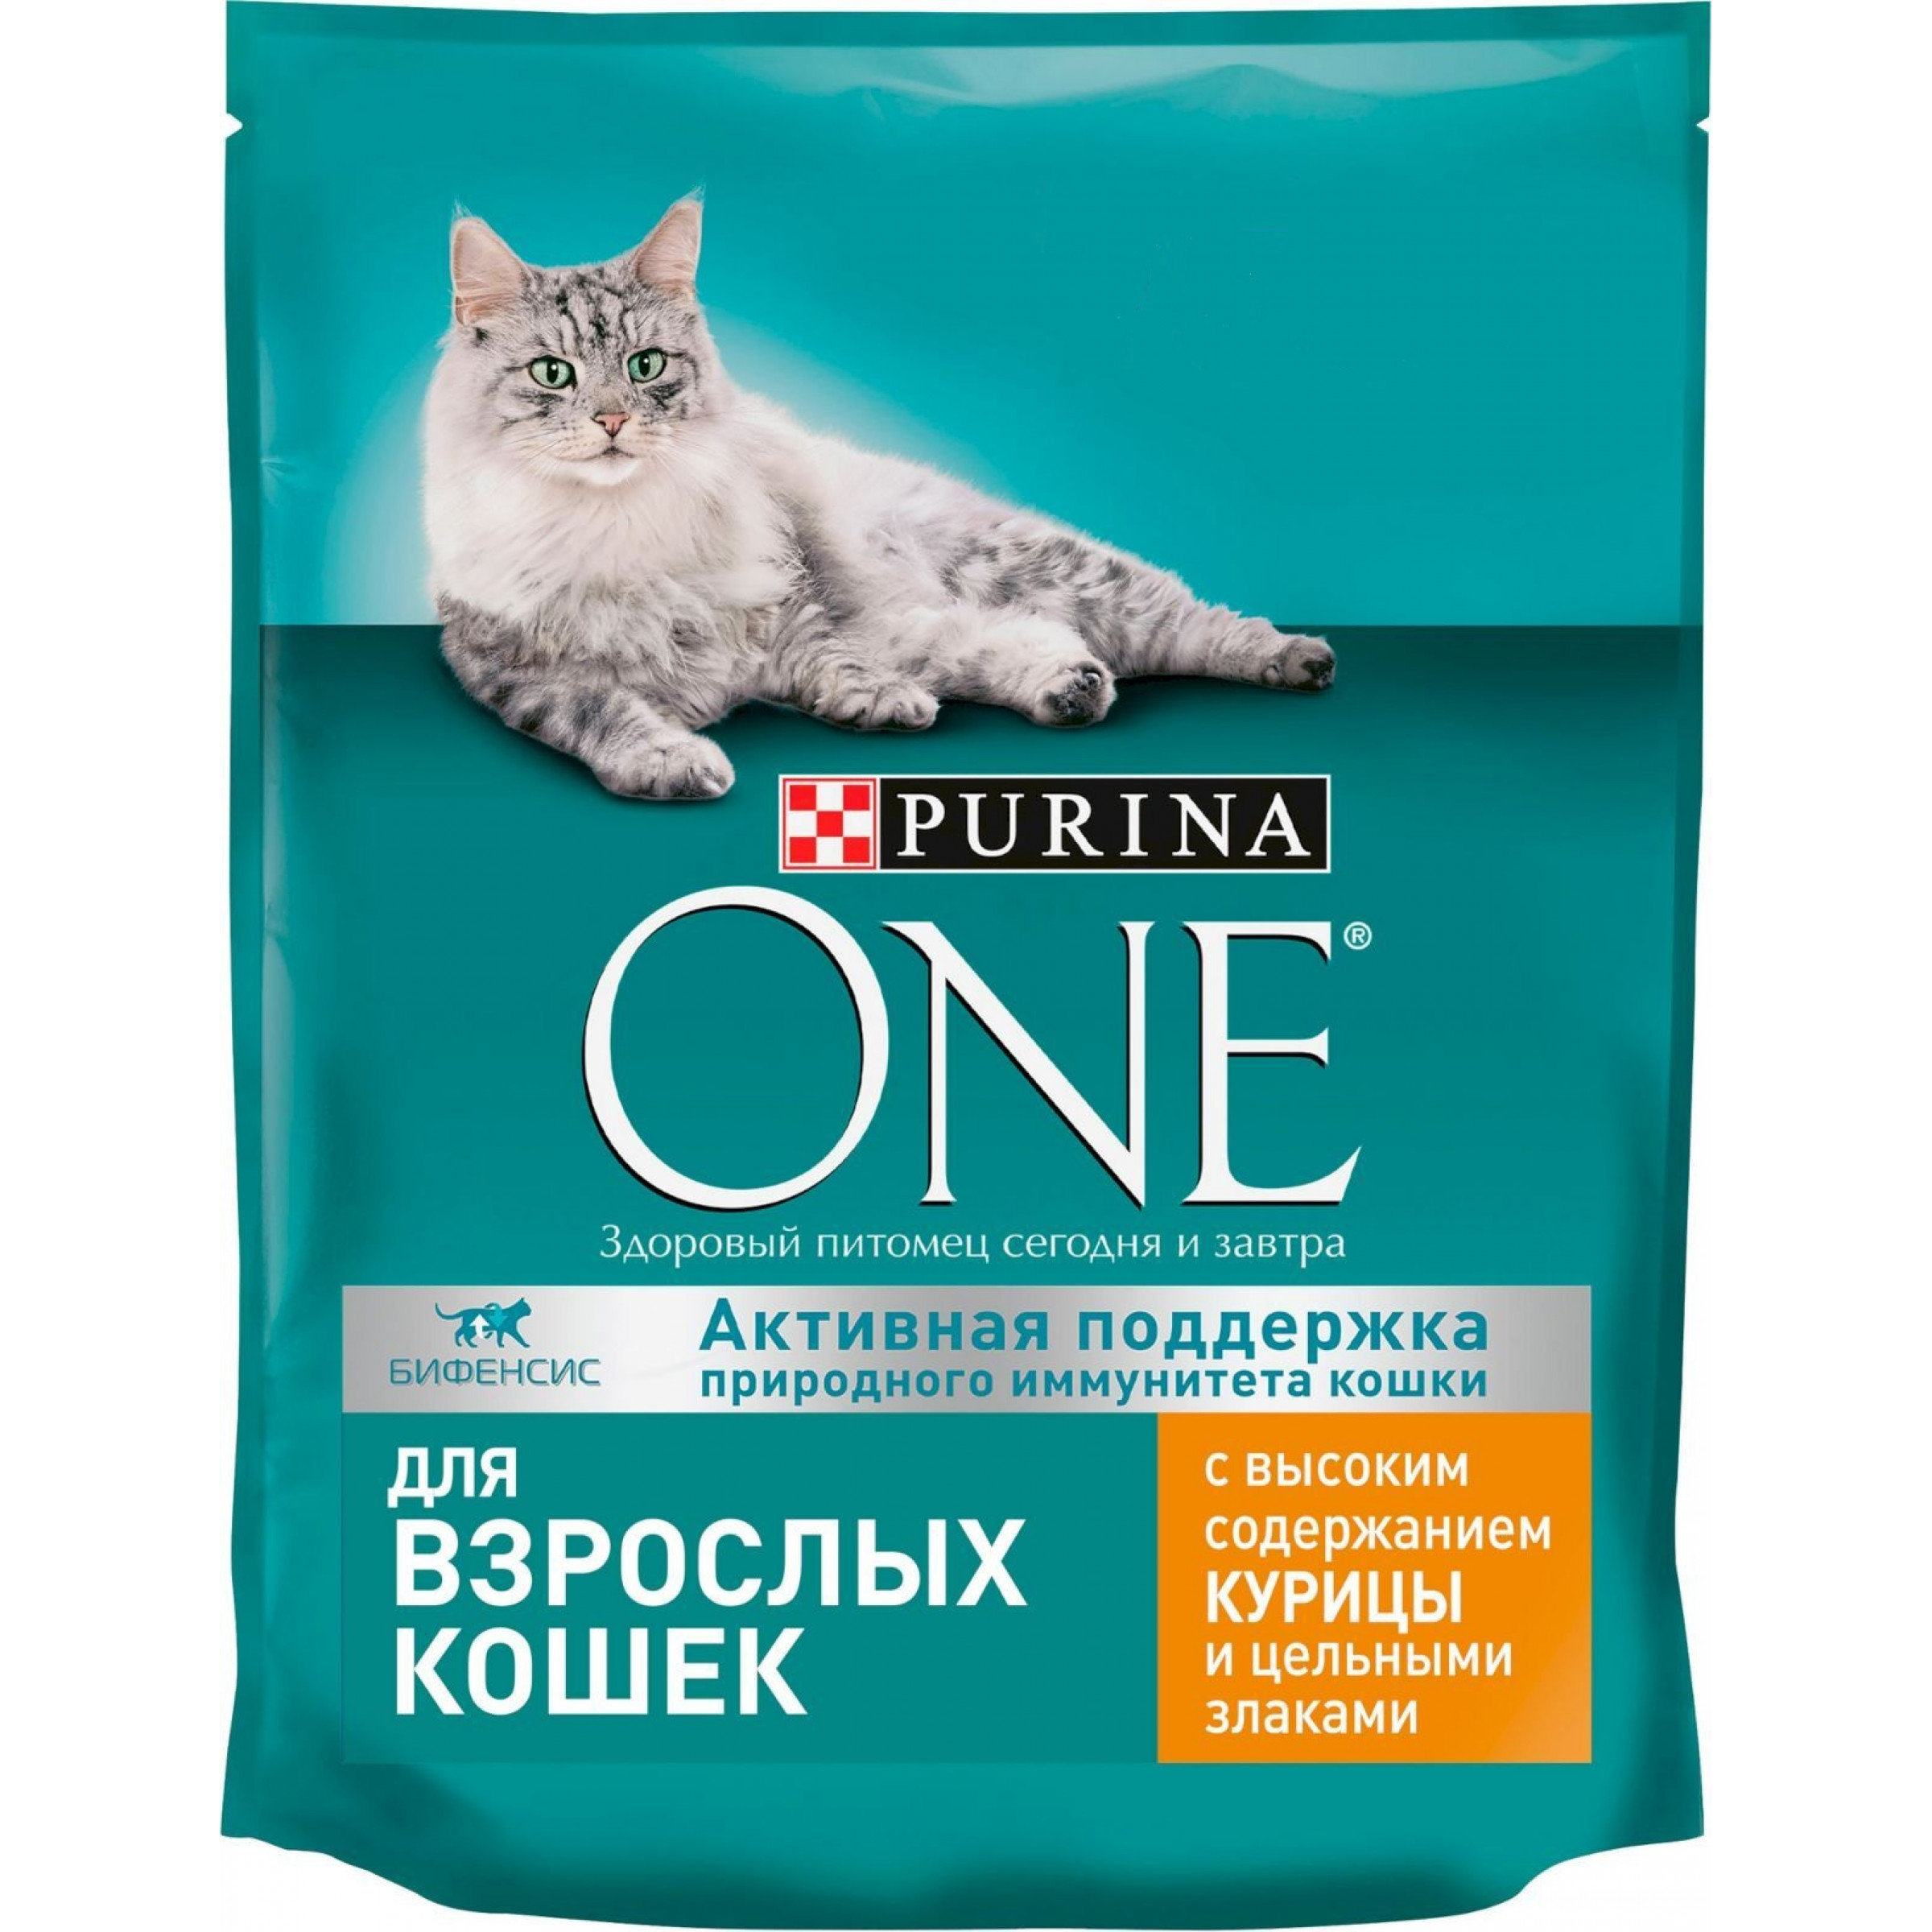 Сухой корм Purina One Adult для кошек с курицей и цельными злаками, 9.75 кг